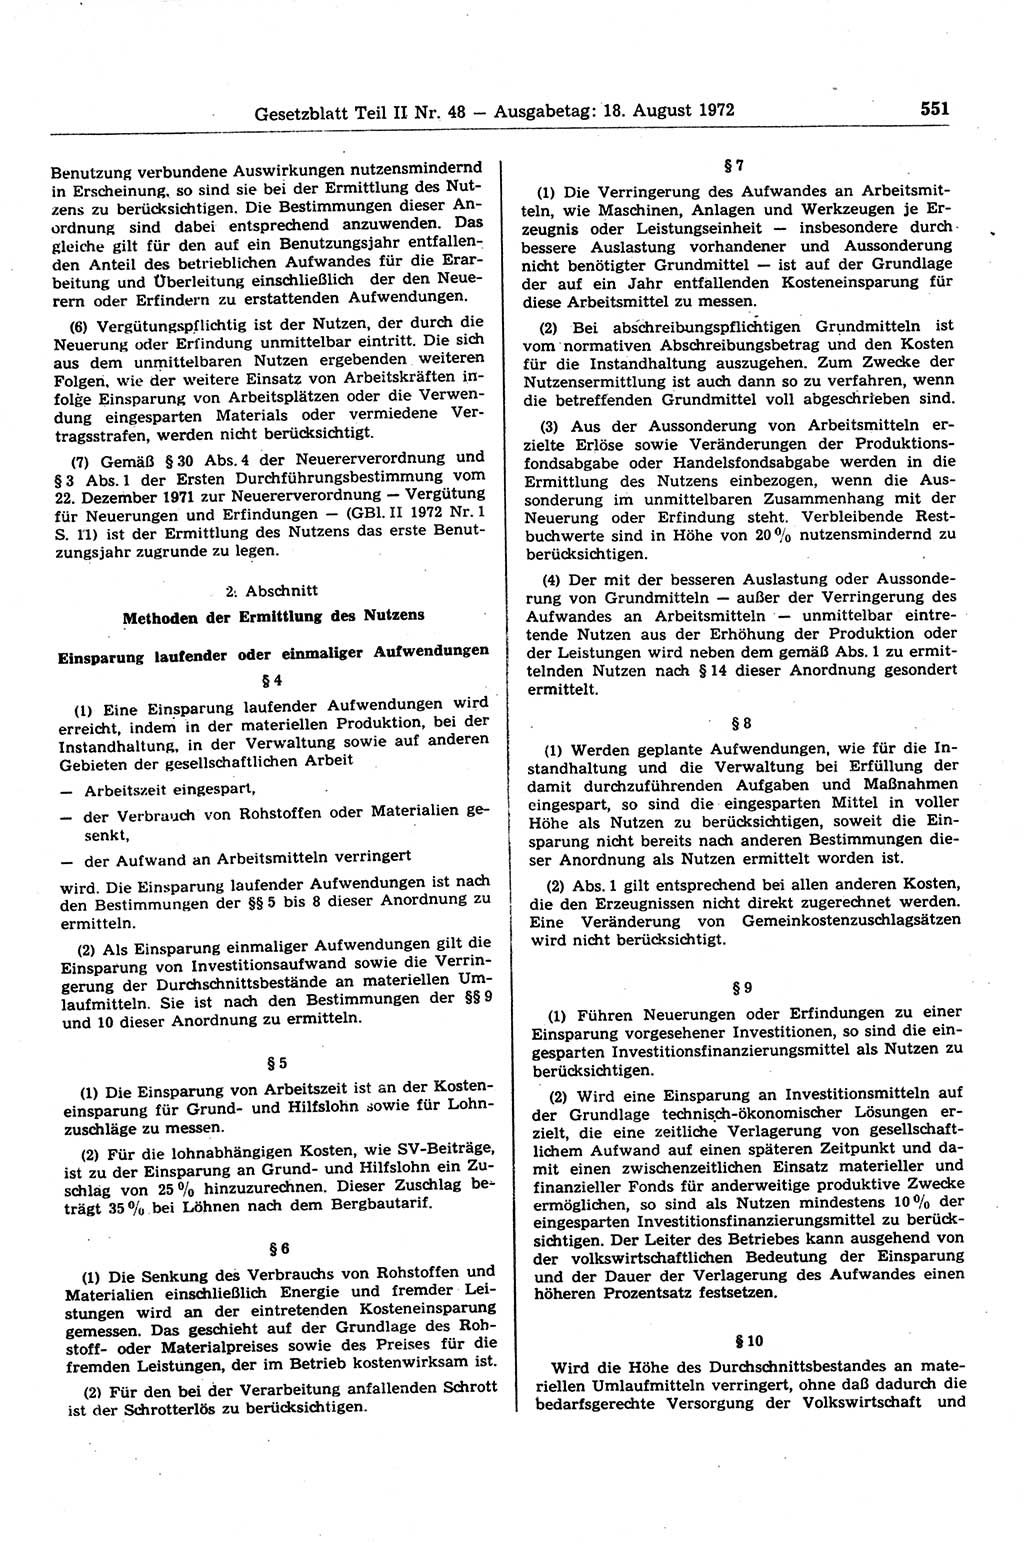 Gesetzblatt (GBl.) der Deutschen Demokratischen Republik (DDR) Teil ⅠⅠ 1972, Seite 551 (GBl. DDR ⅠⅠ 1972, S. 551)